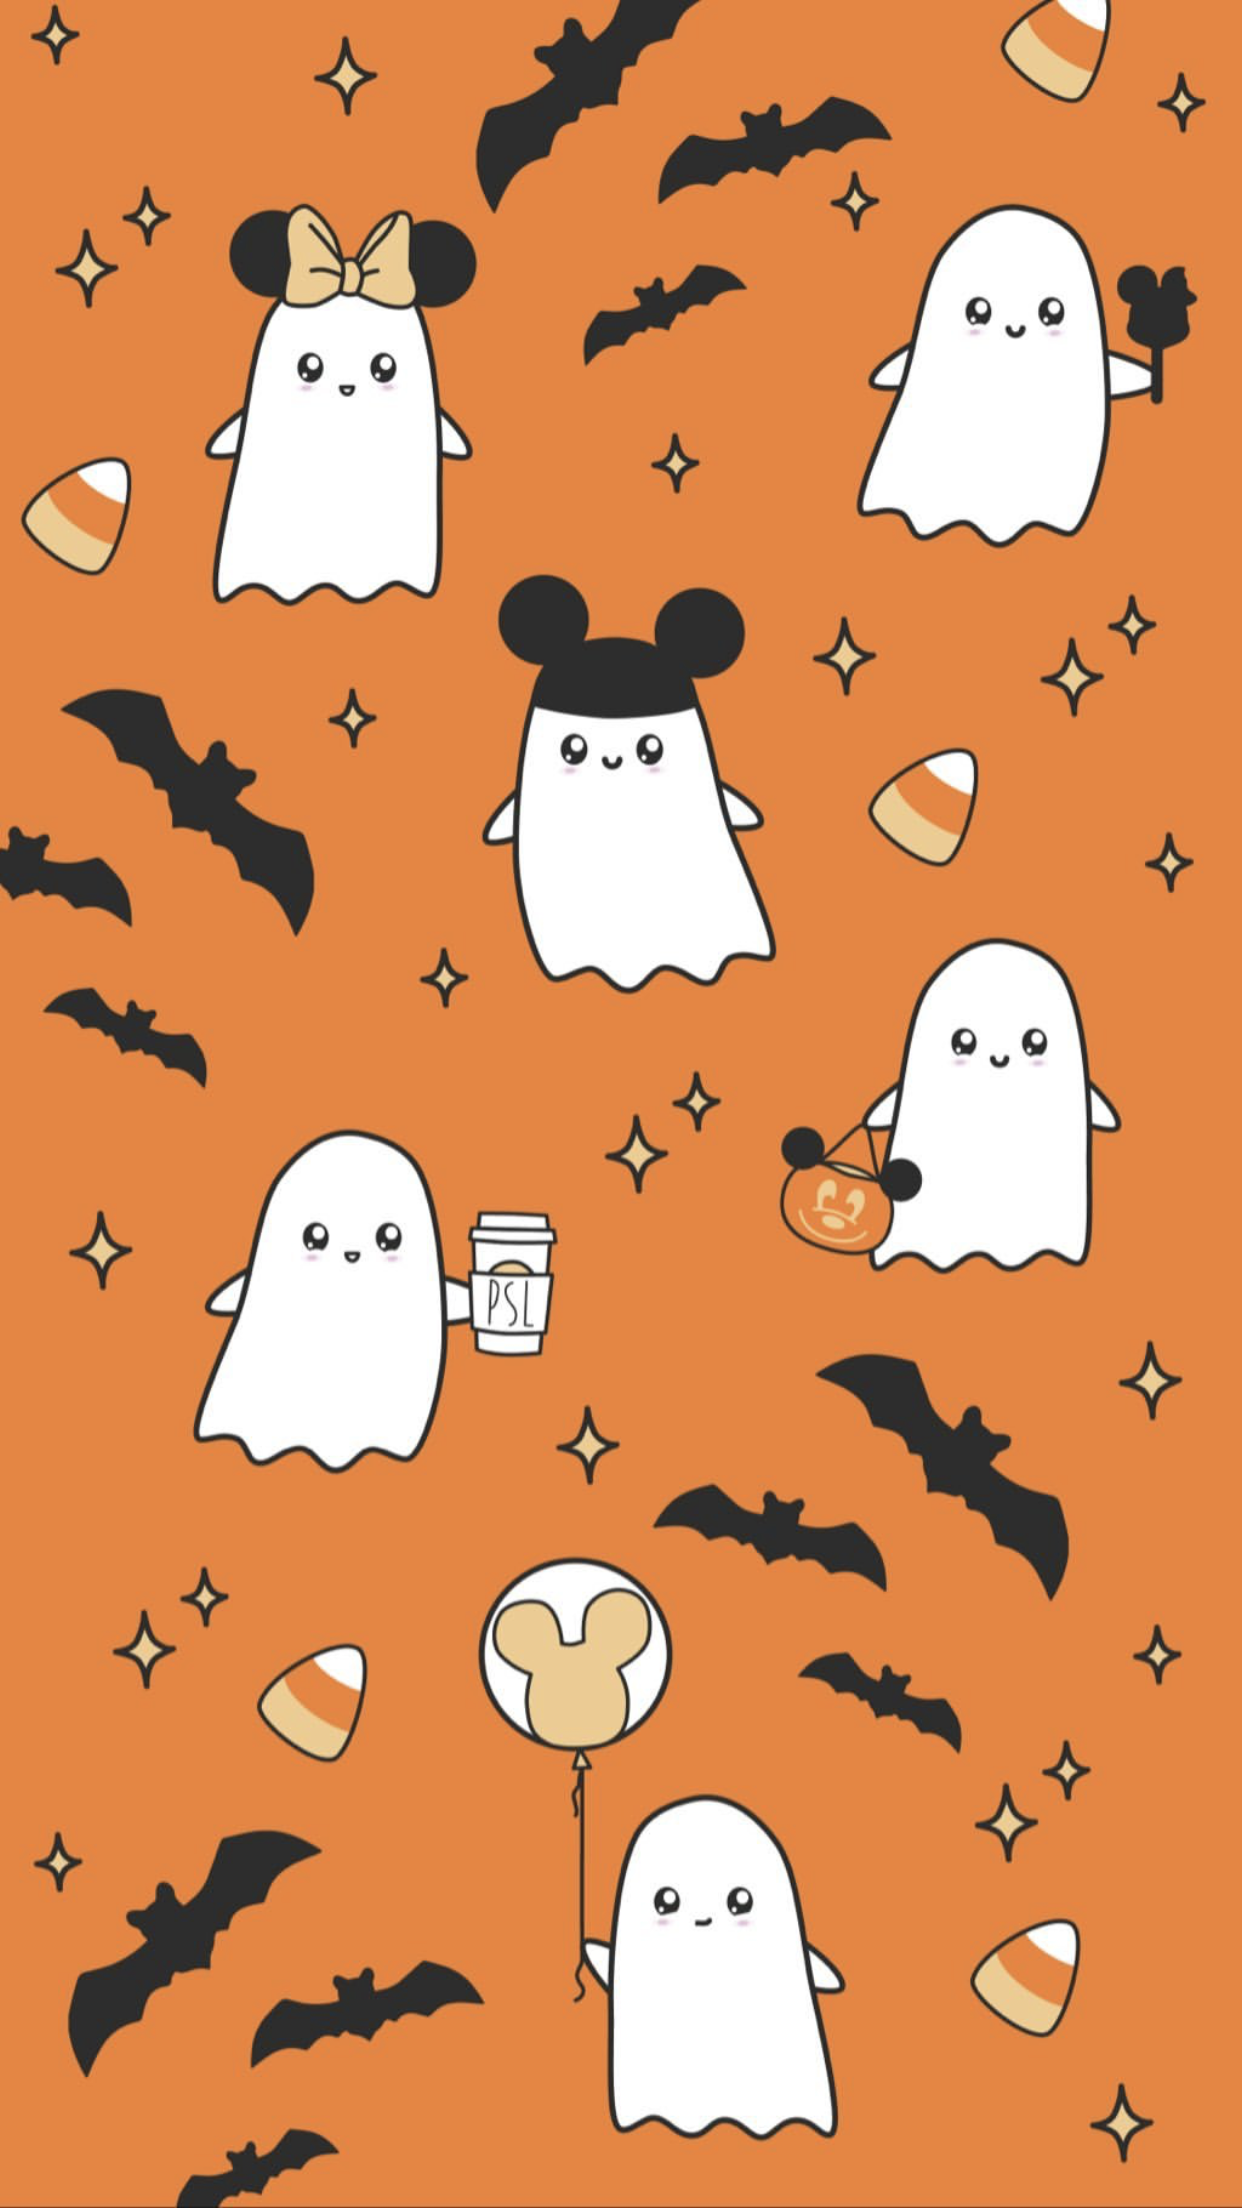 Disney Halloween Phone Wallpapers